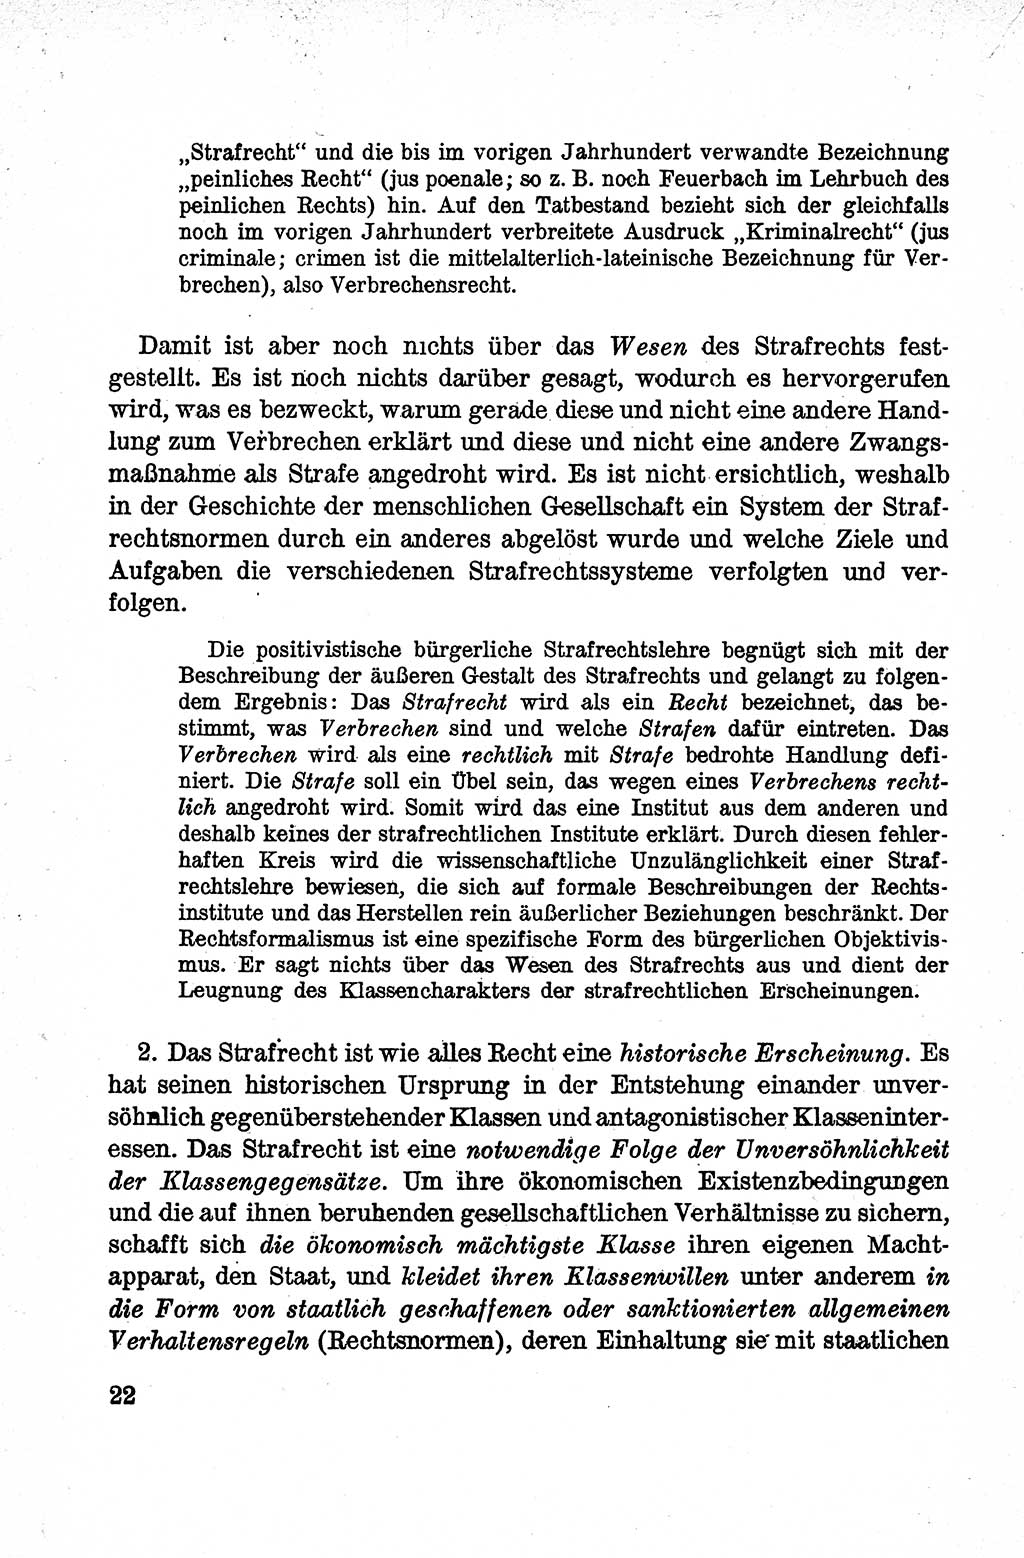 Lehrbuch des Strafrechts der Deutschen Demokratischen Republik (DDR), Allgemeiner Teil 1959, Seite 22 (Lb. Strafr. DDR AT 1959, S. 22)